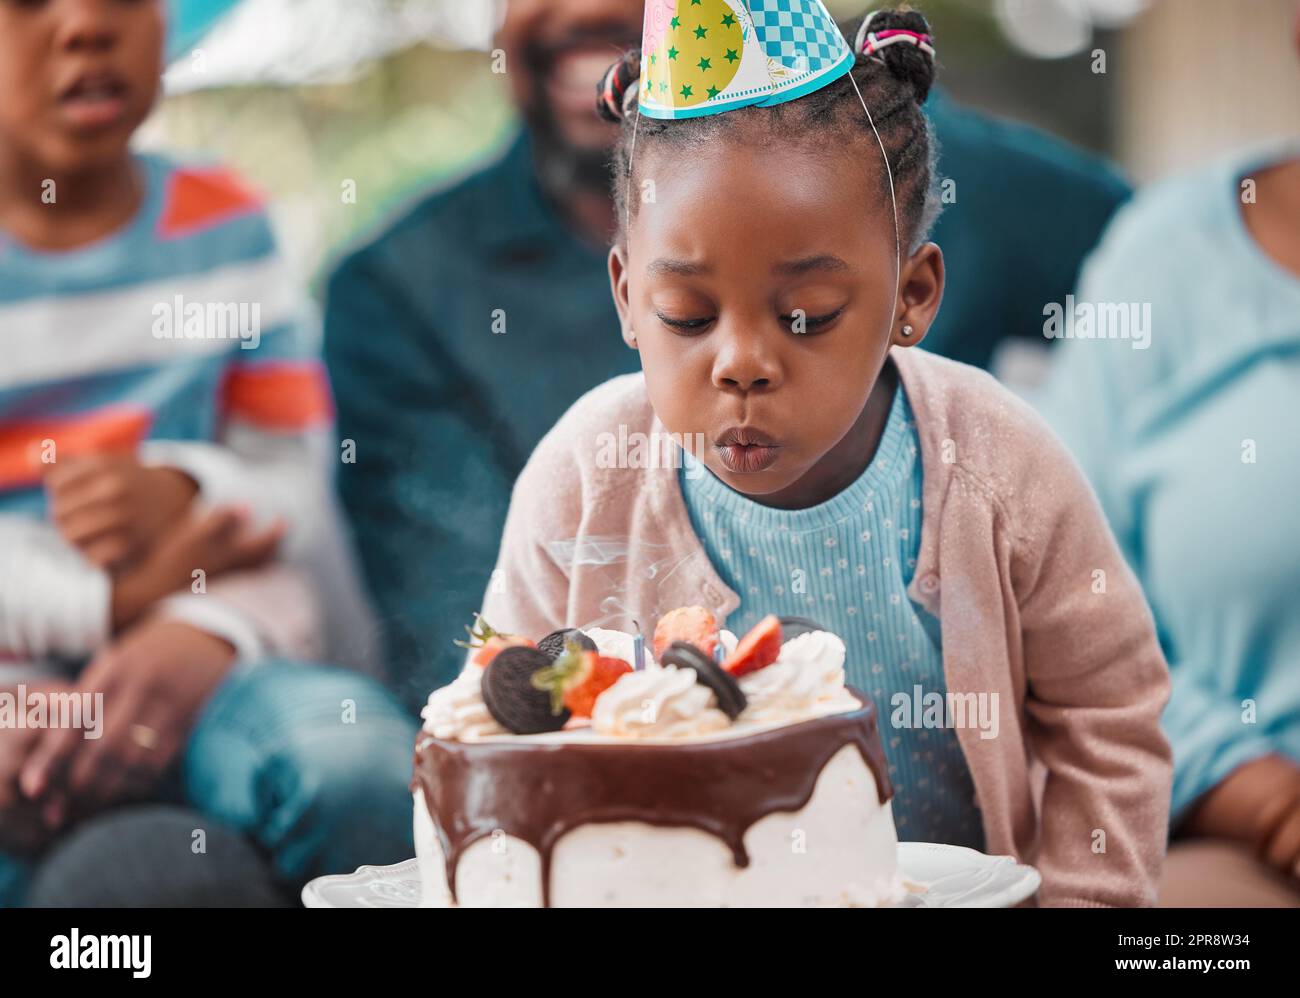 Im macht meinen Wunsch. Ein entzückendes kleines Mädchen bläst Kerzen während ihrer Geburtstagsparty. Stockfoto